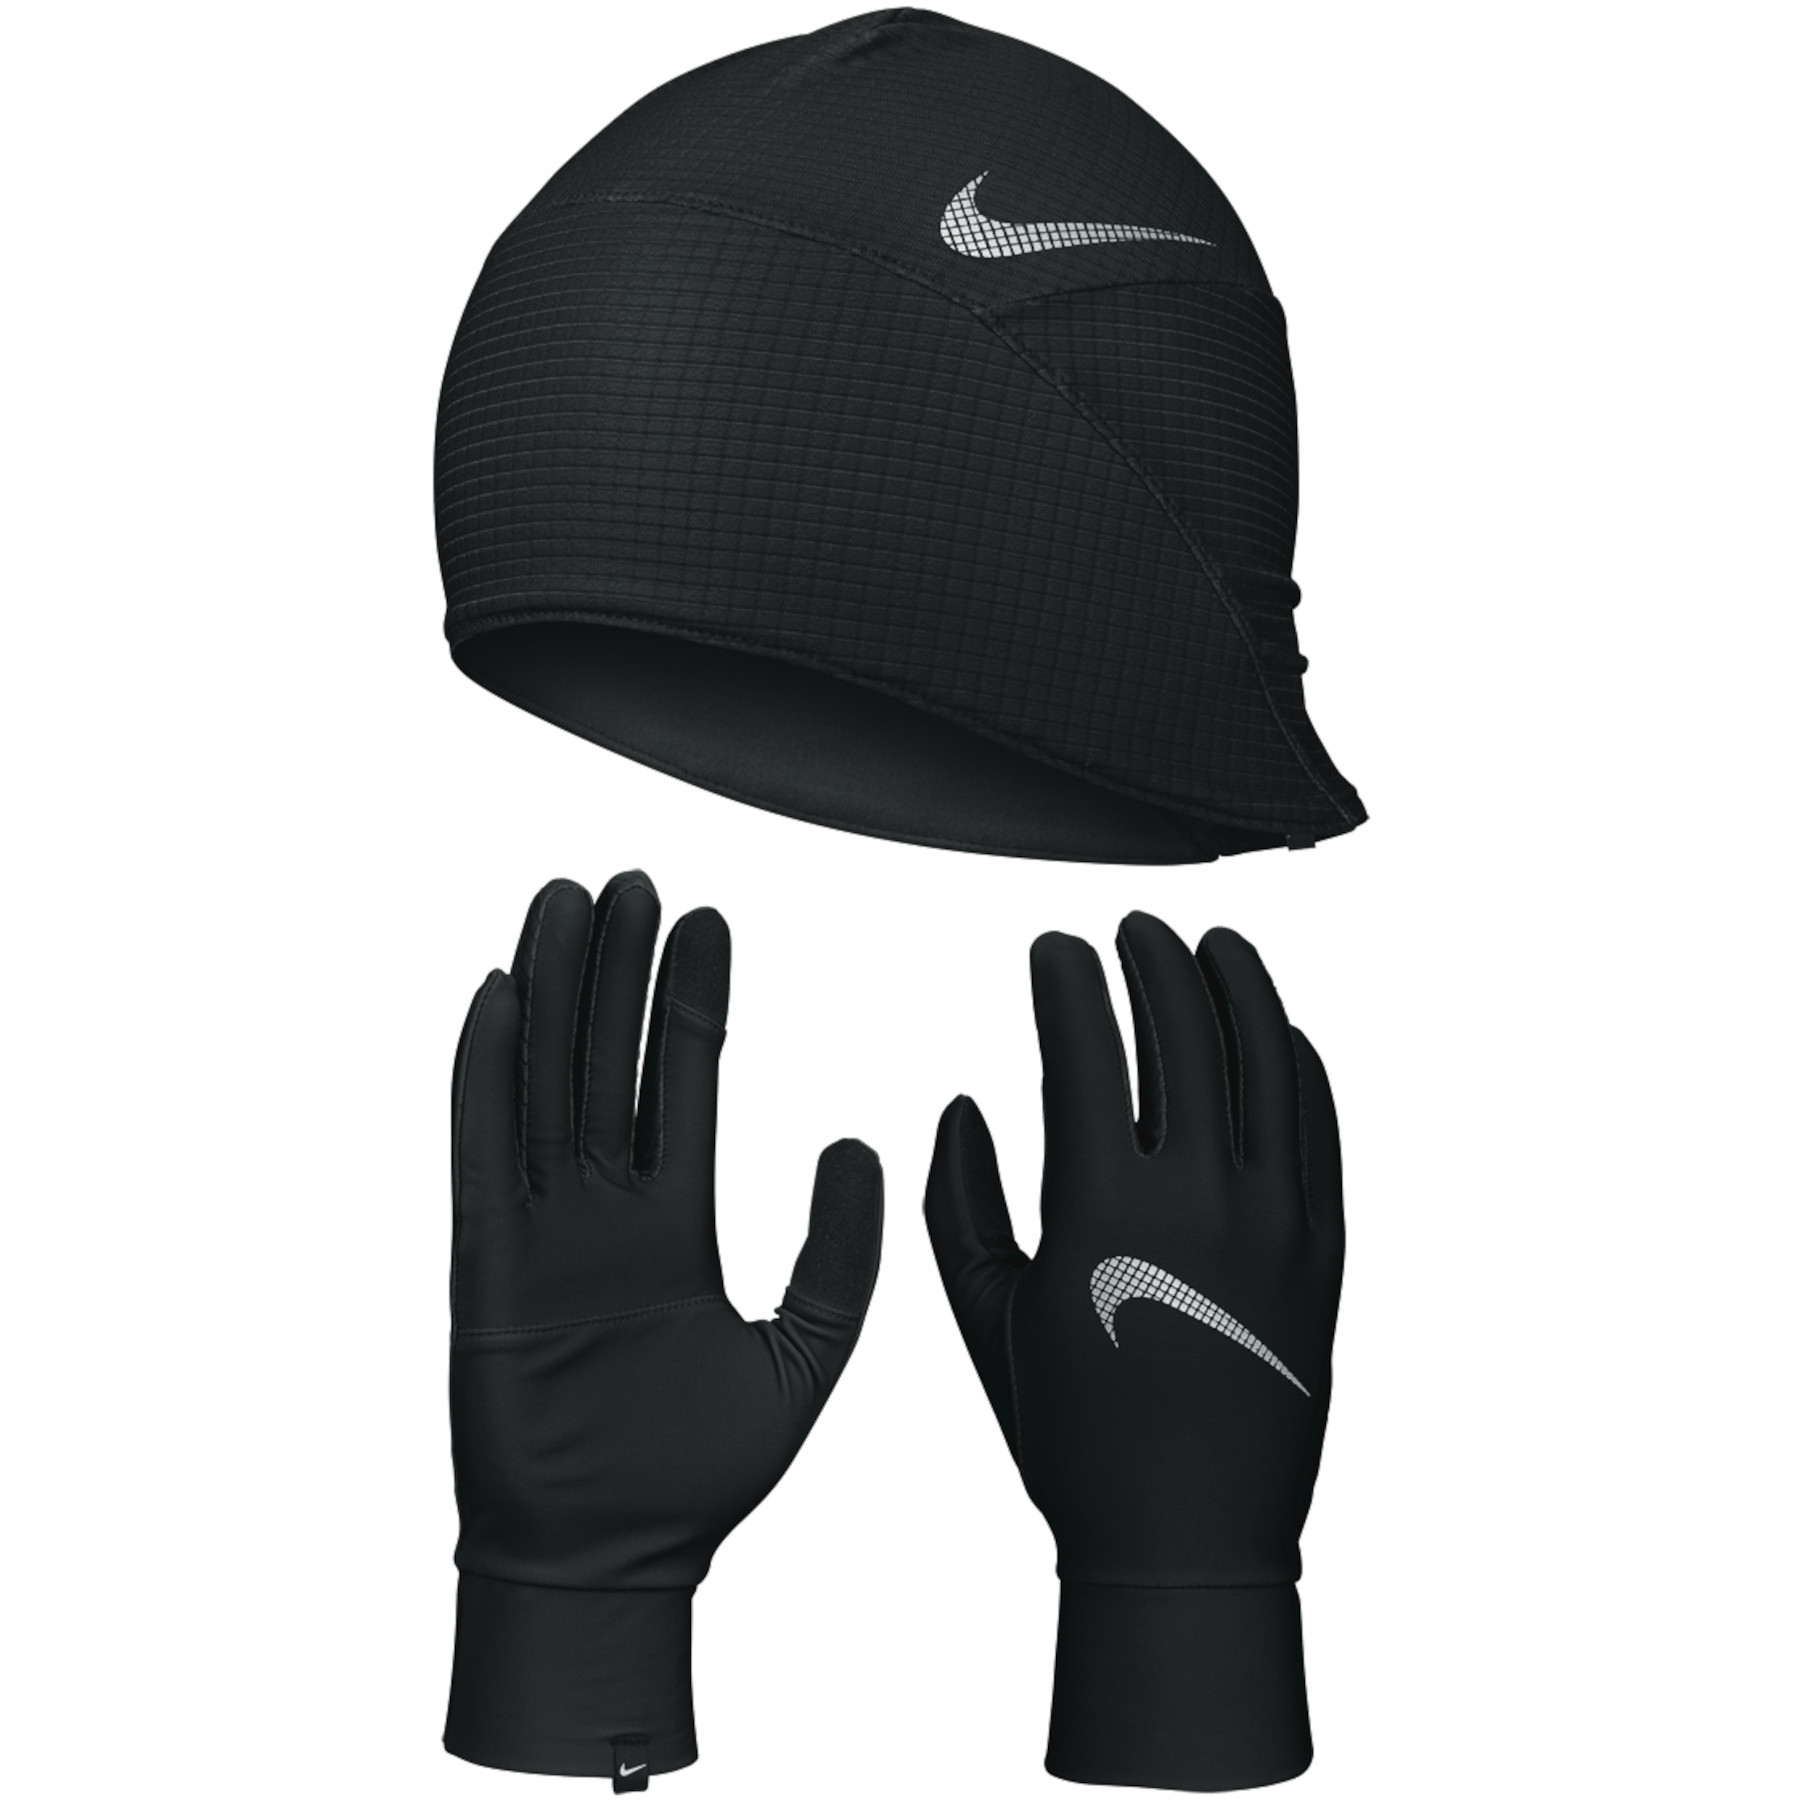 Immagine prodotto da Nike Set Guanti + Berretto Uomo - Essential Running - black/black/silver 082